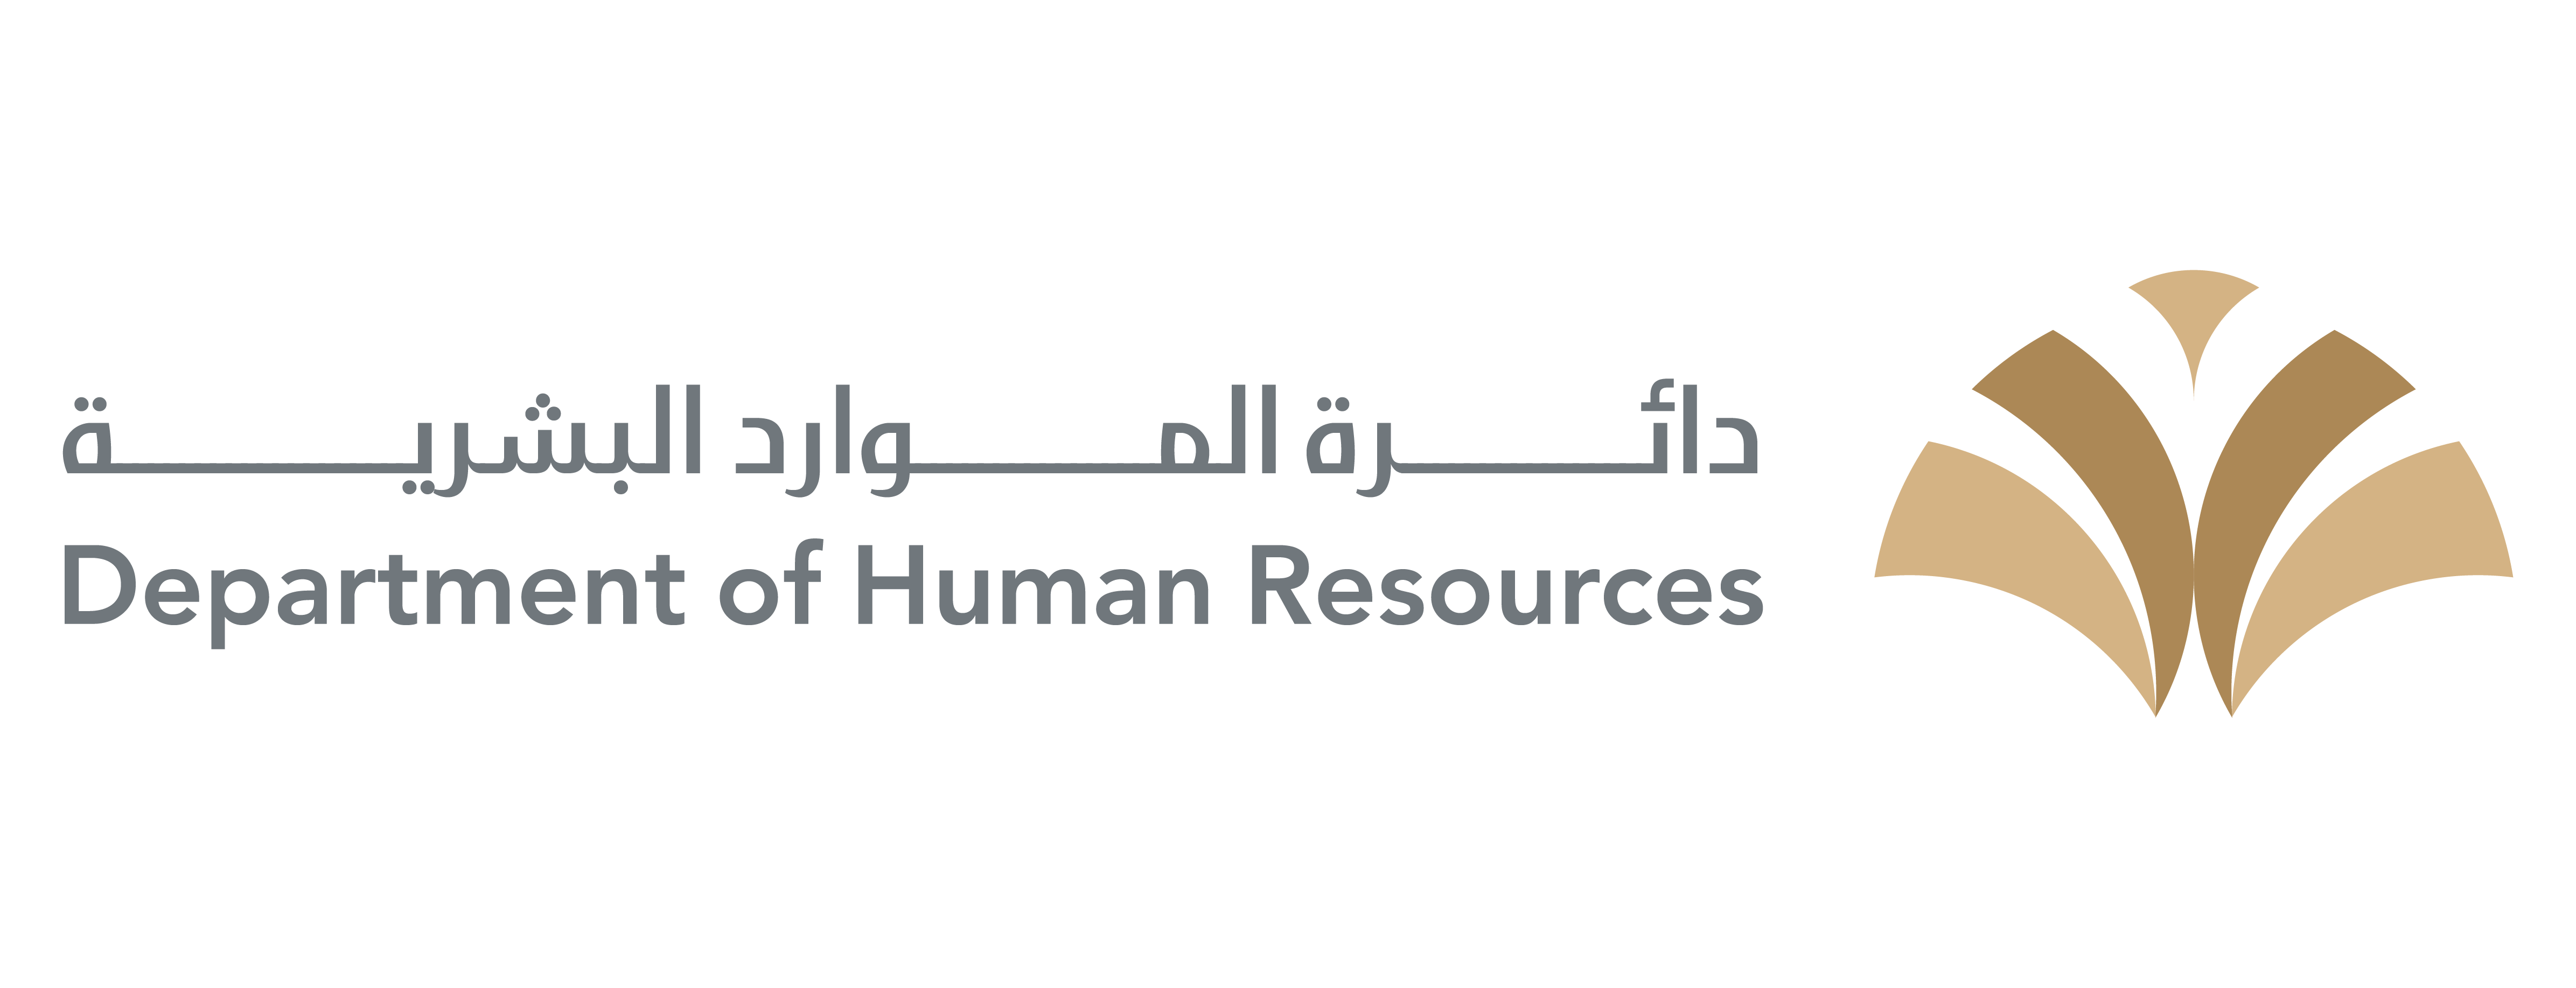 شعار دائرة الموارد البشرية